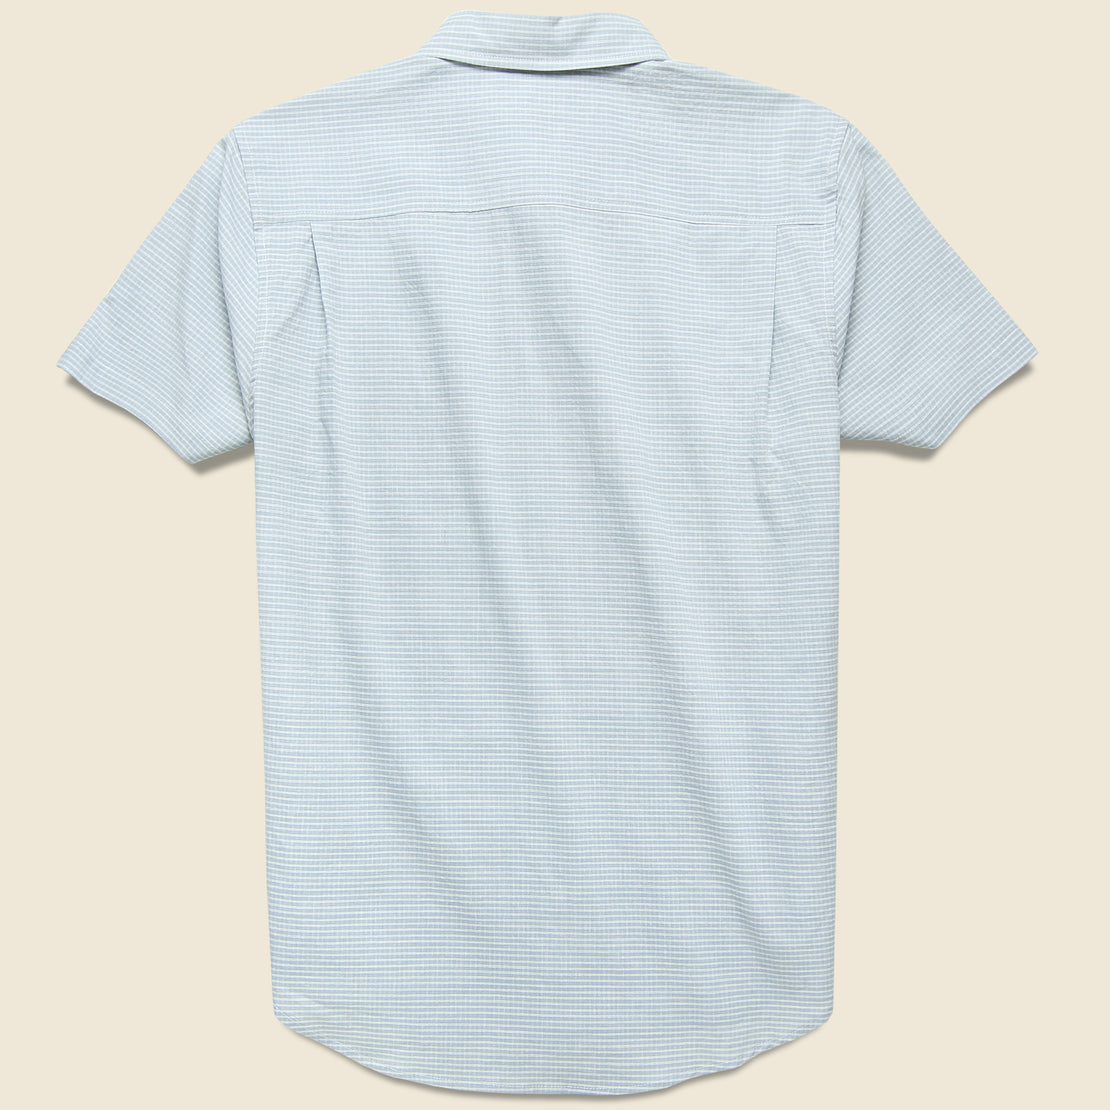 Marten Shirt - Light Grey Grid